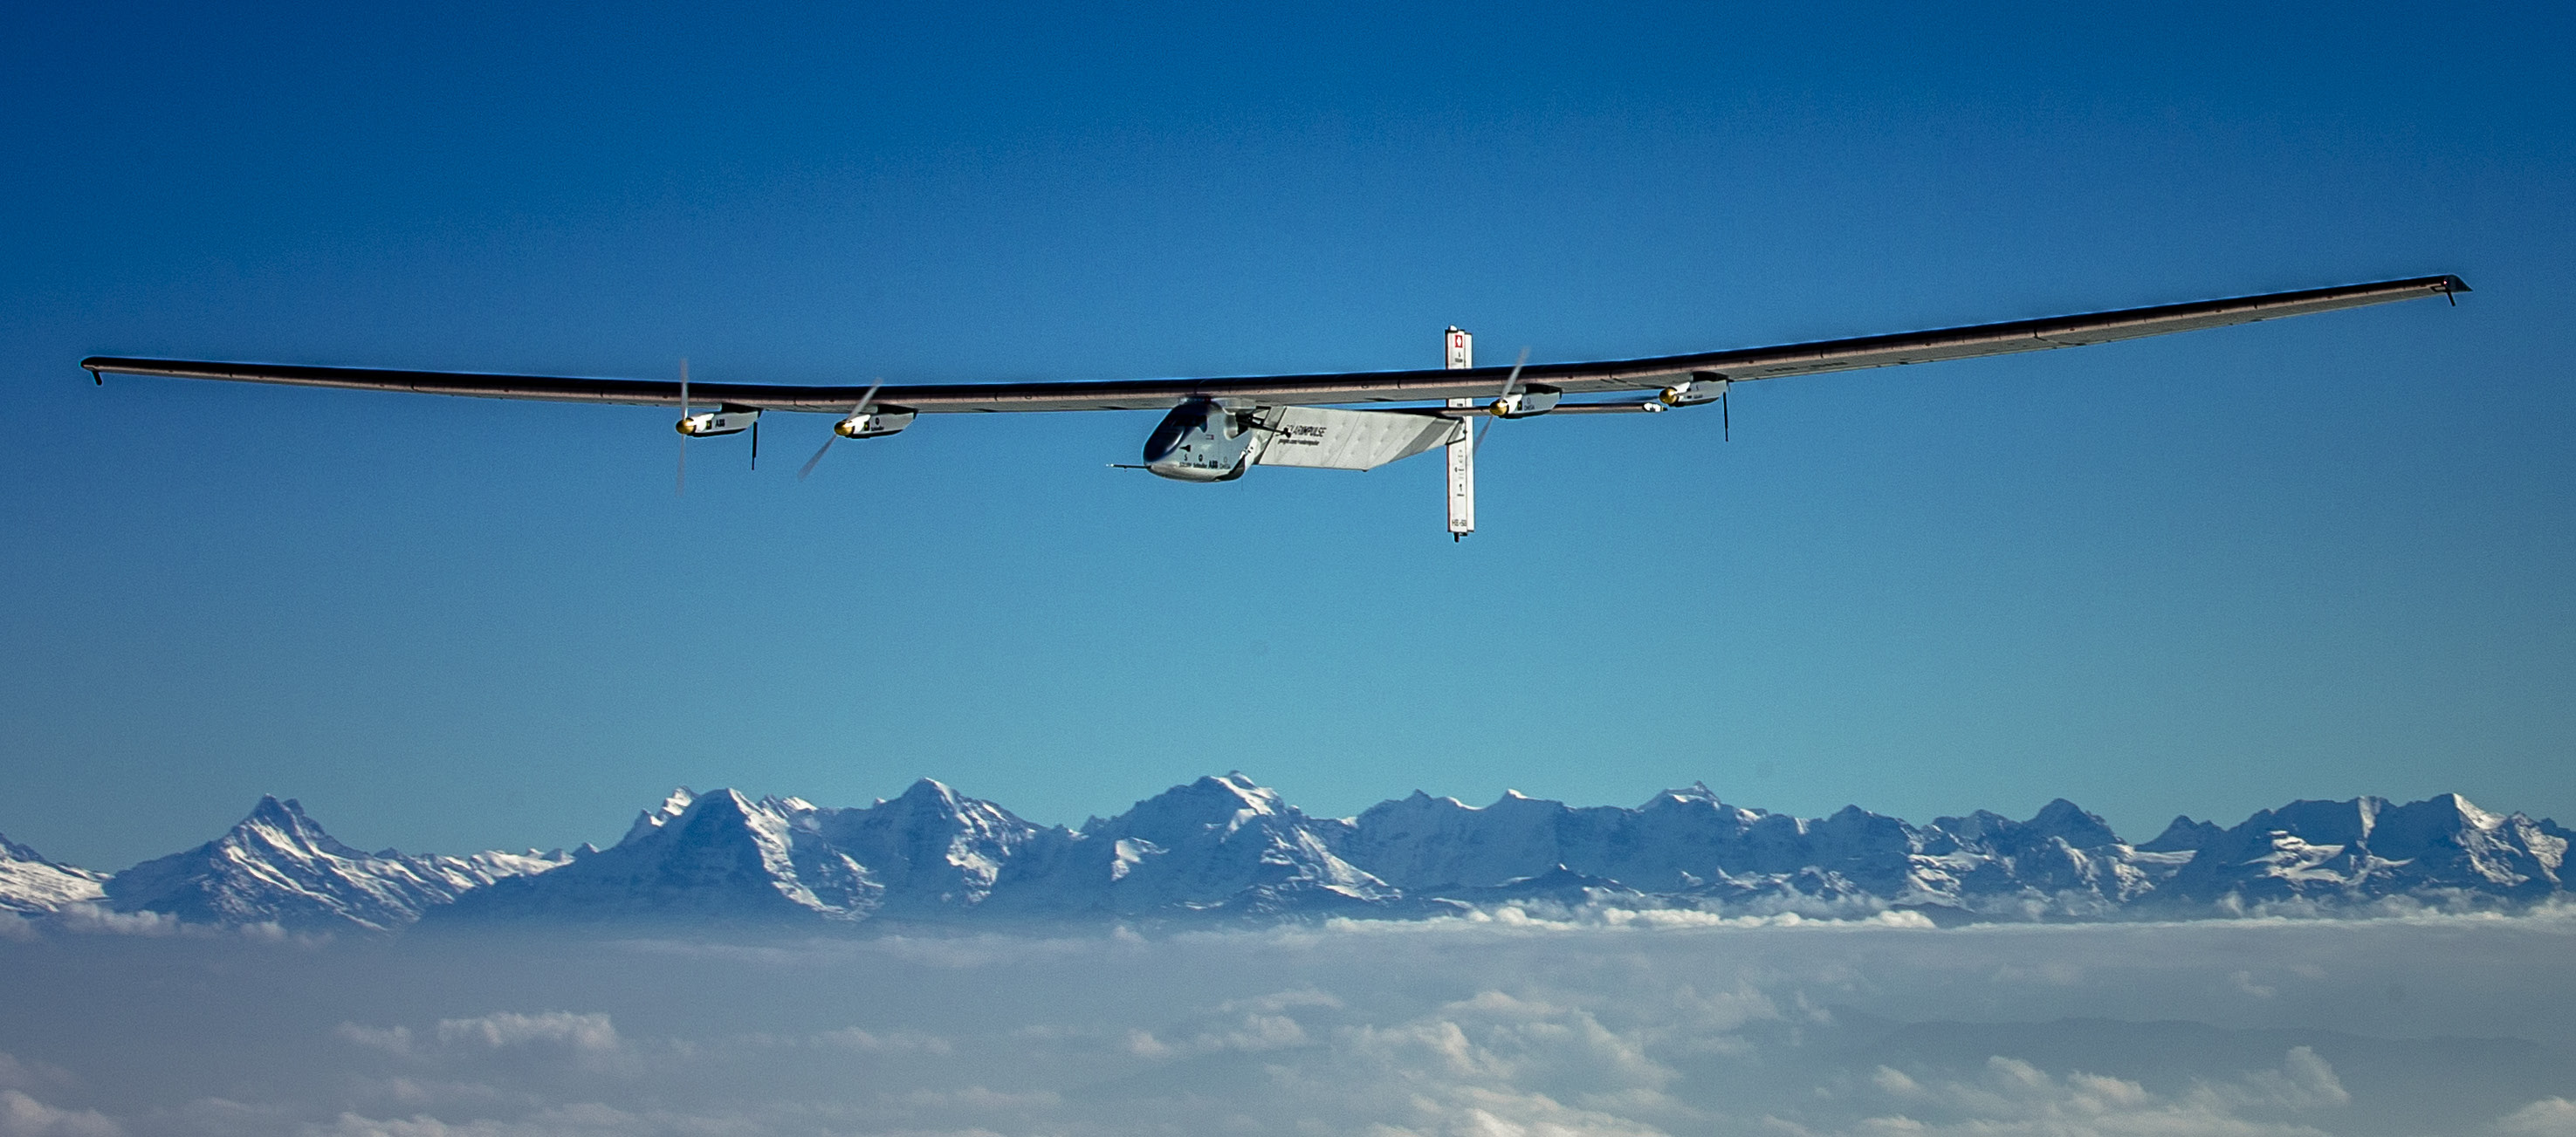 Thema: Solarflugzeug Solar Impulse 2 Es war einmal eine verrückte Idee. Ein Flugzeug, das Tag und Nacht ohne Treibstoff, allein mit der Kraft der Sonne fliegen kann.